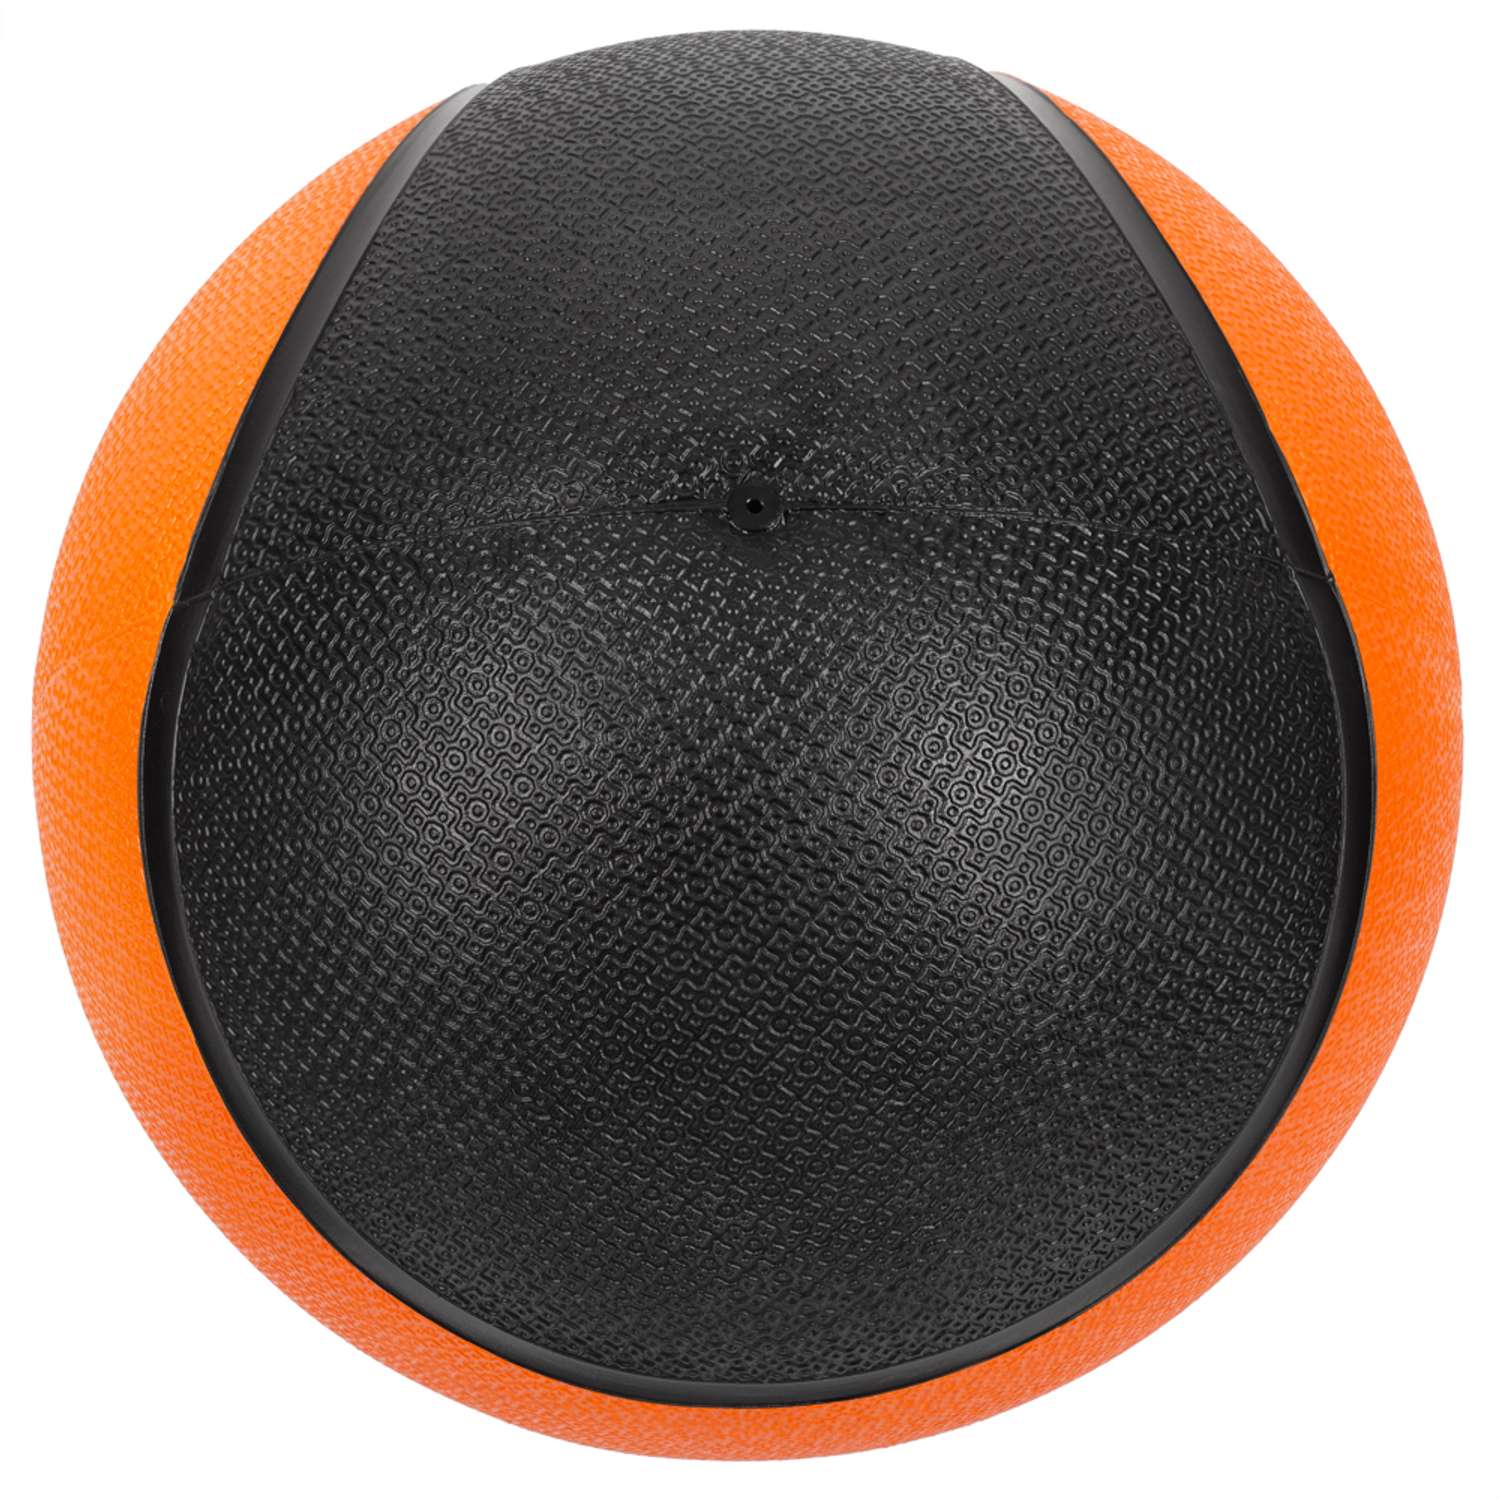 Медбол STRONG BODY медицинский мяч для фитнеса черно-оранжевый 3 кг - фото 5